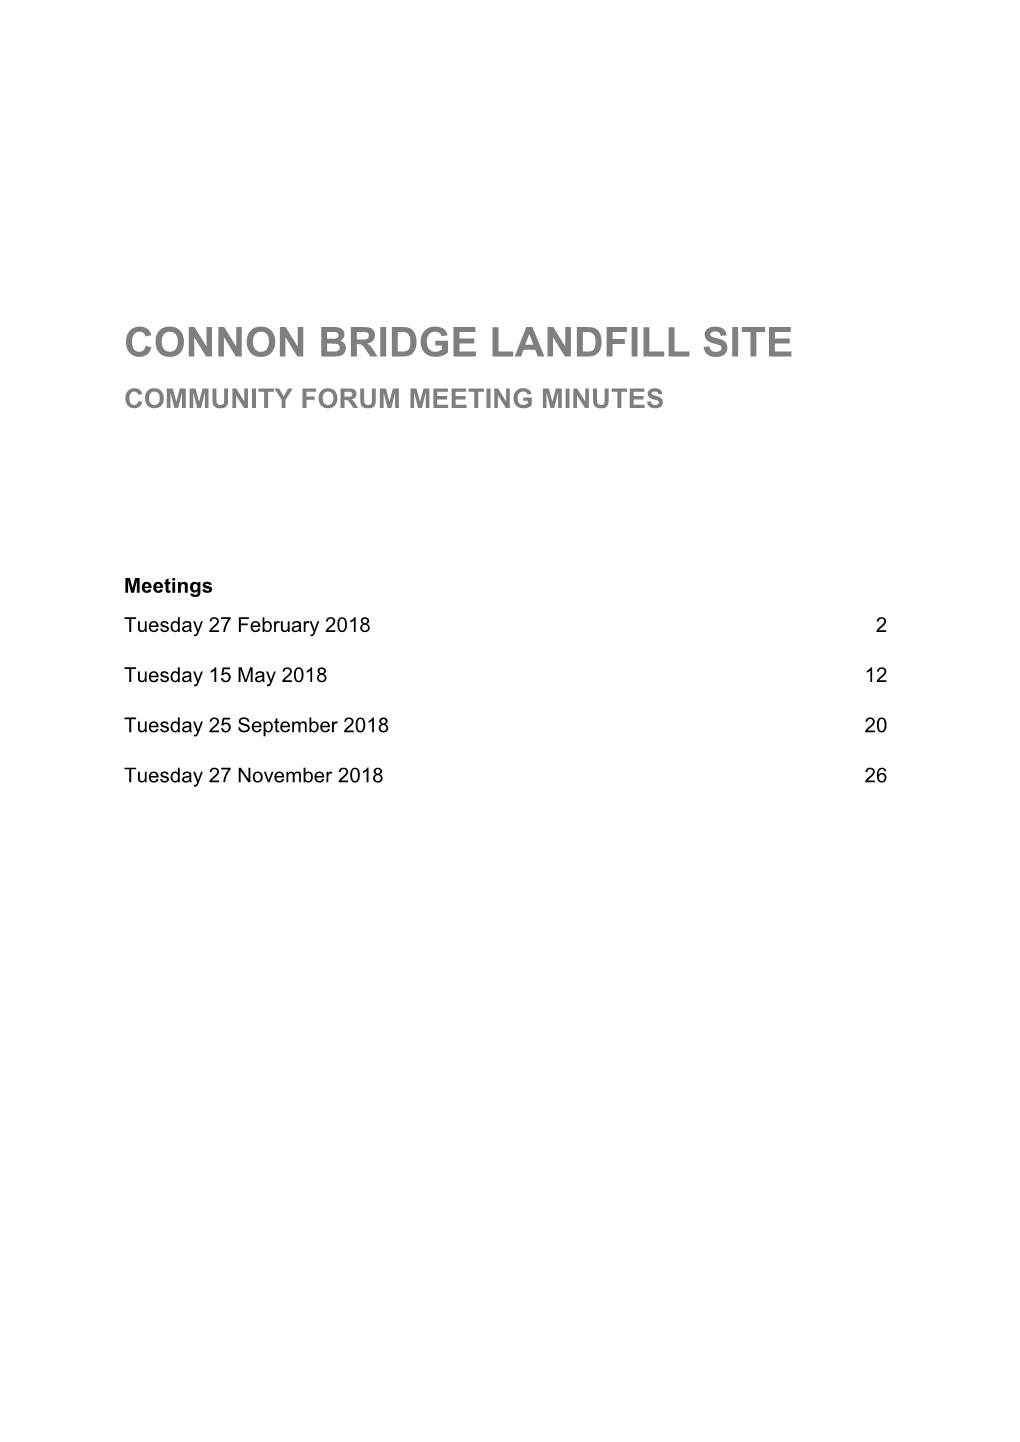 Connon Bridge Landfill Site Community Forum Meeting Minutes